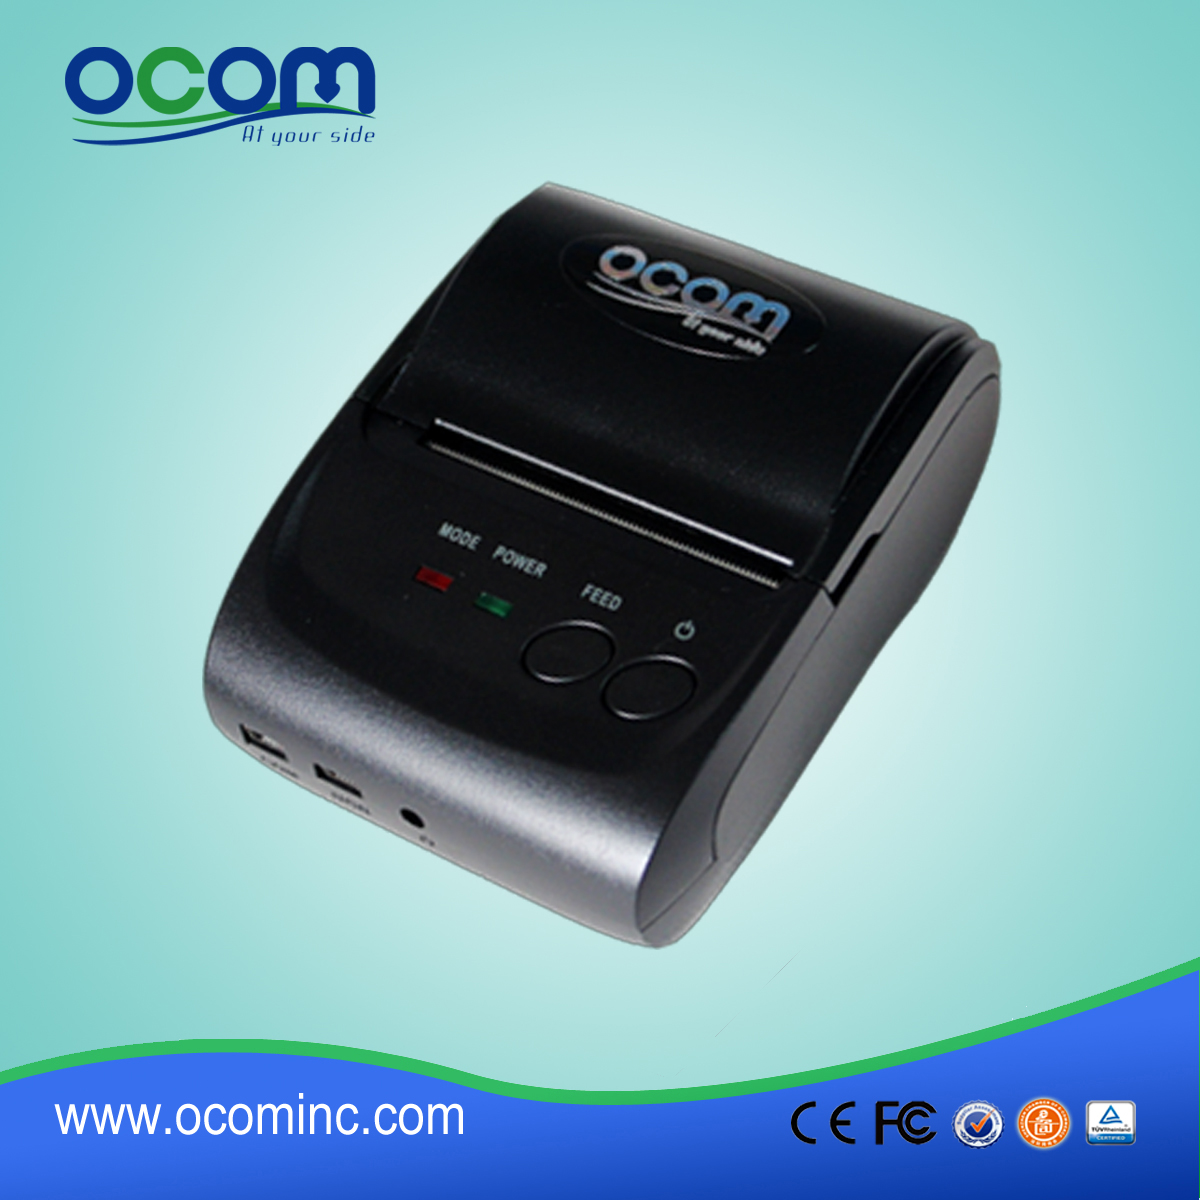 OCPP-M05: 58mm imprimante thermique bluetooth, mini imprimante ticket thermique